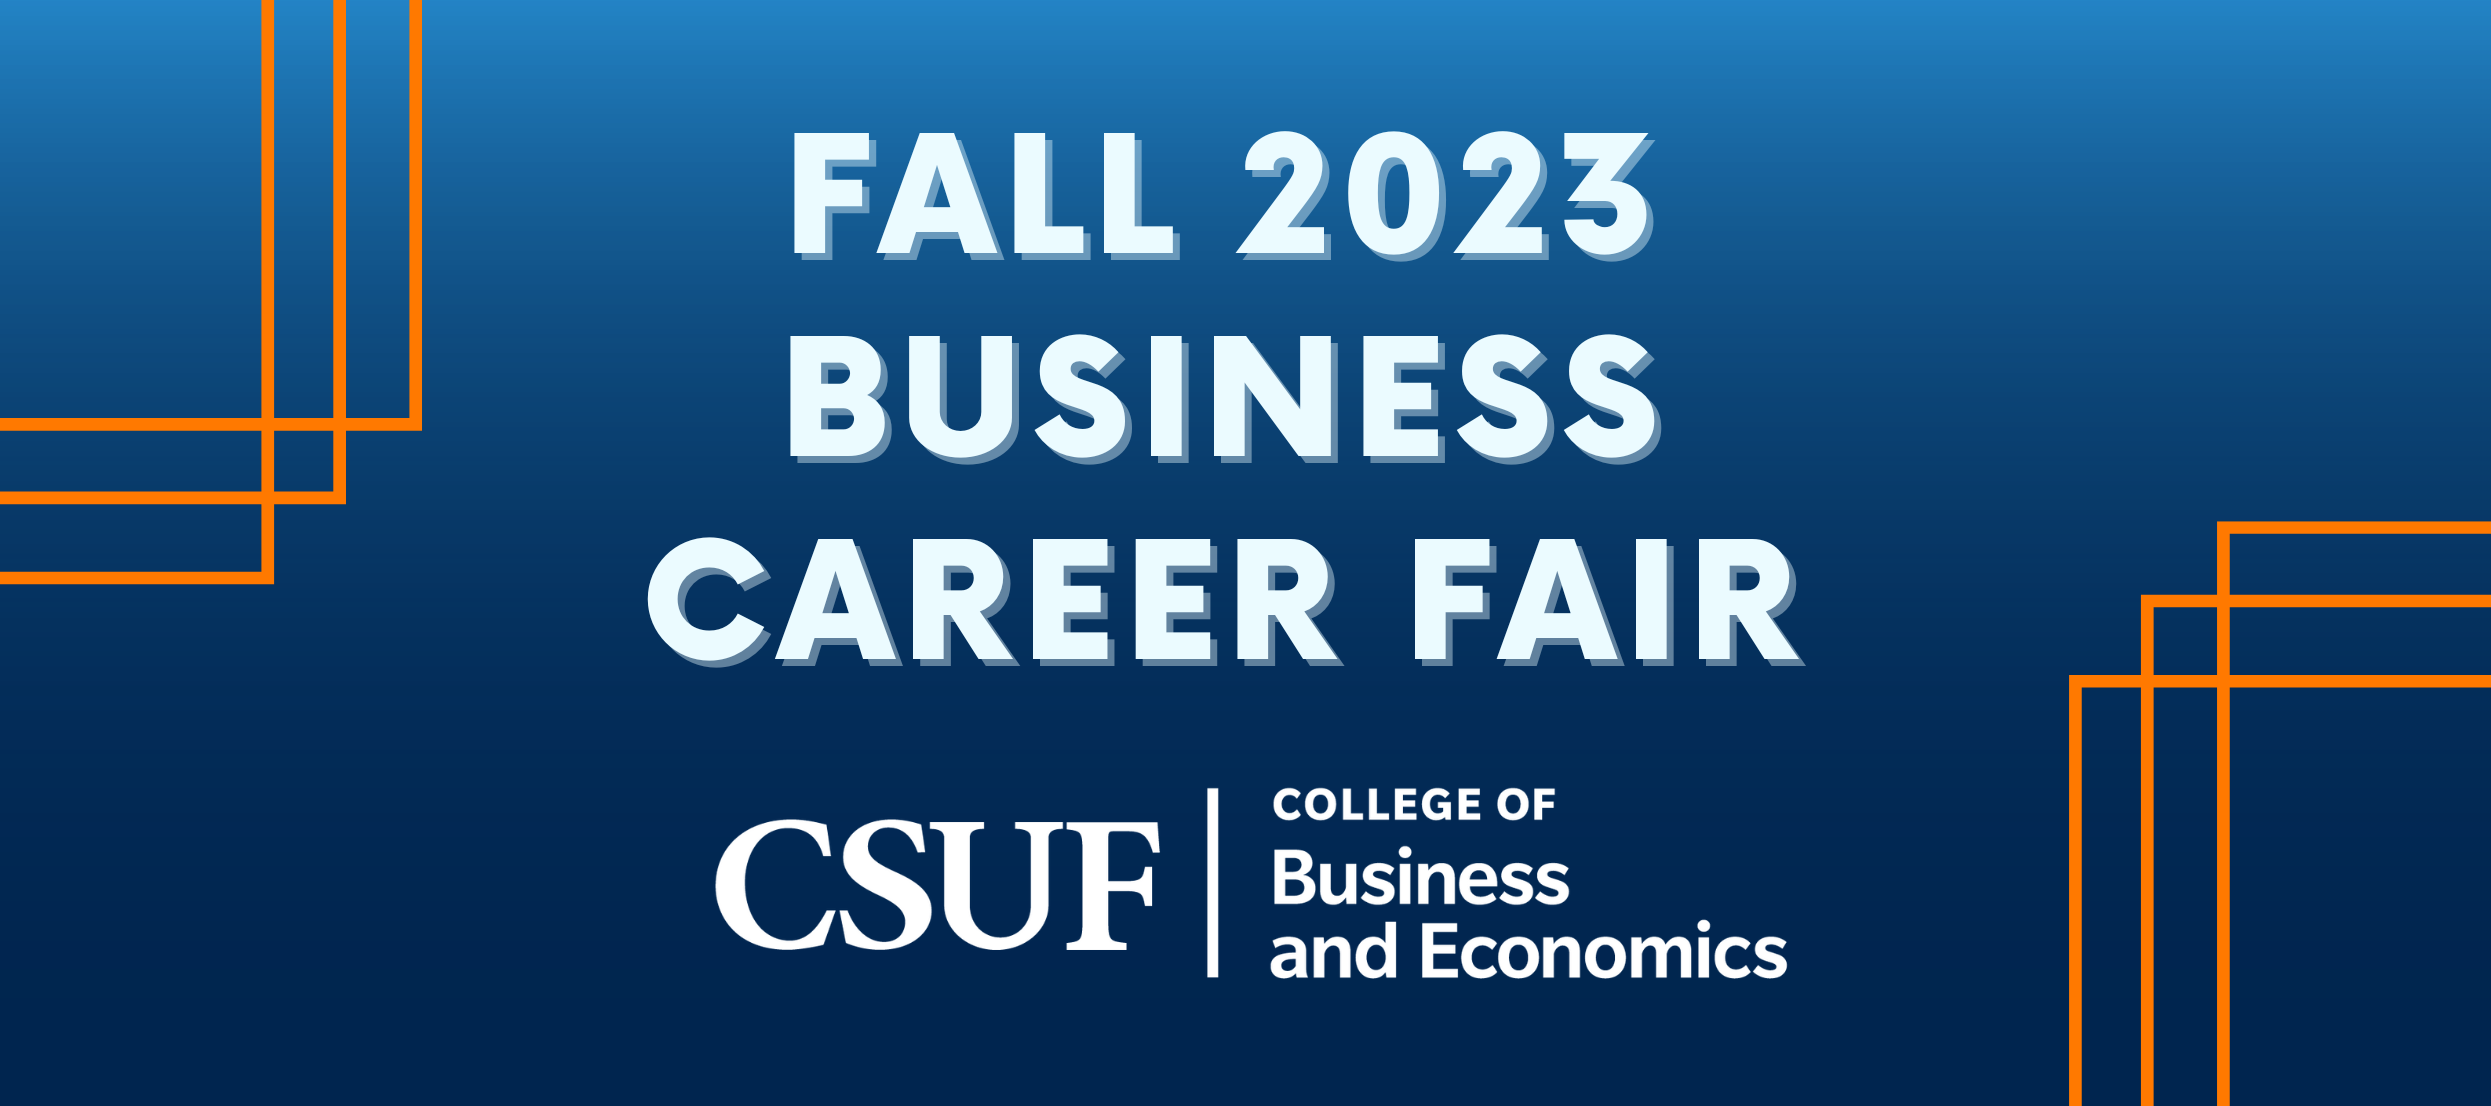 Fall 2023 Business Career Fair